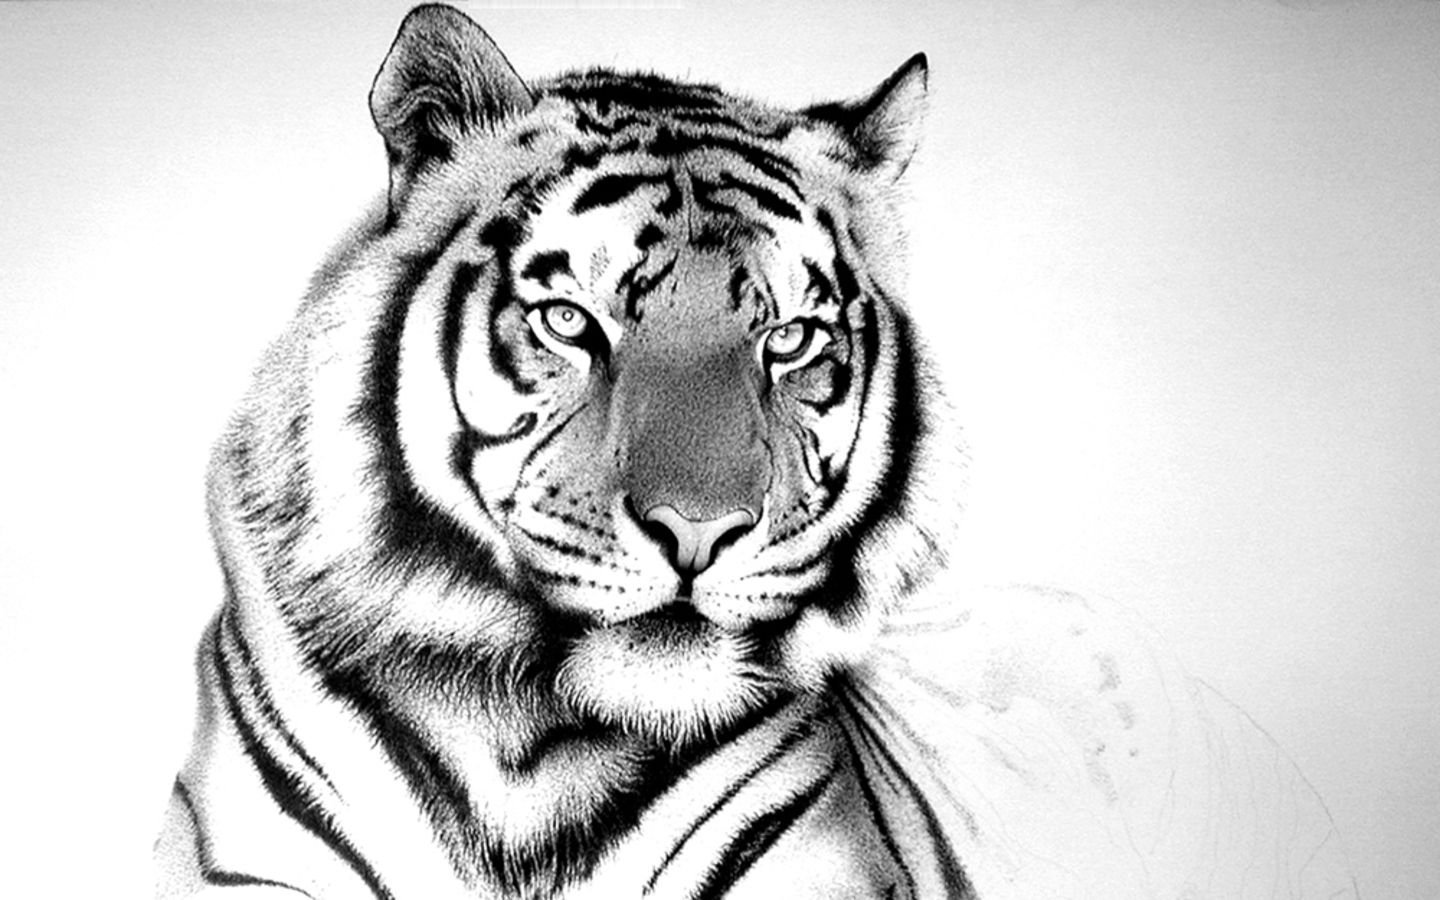 Tigre dibujo cara